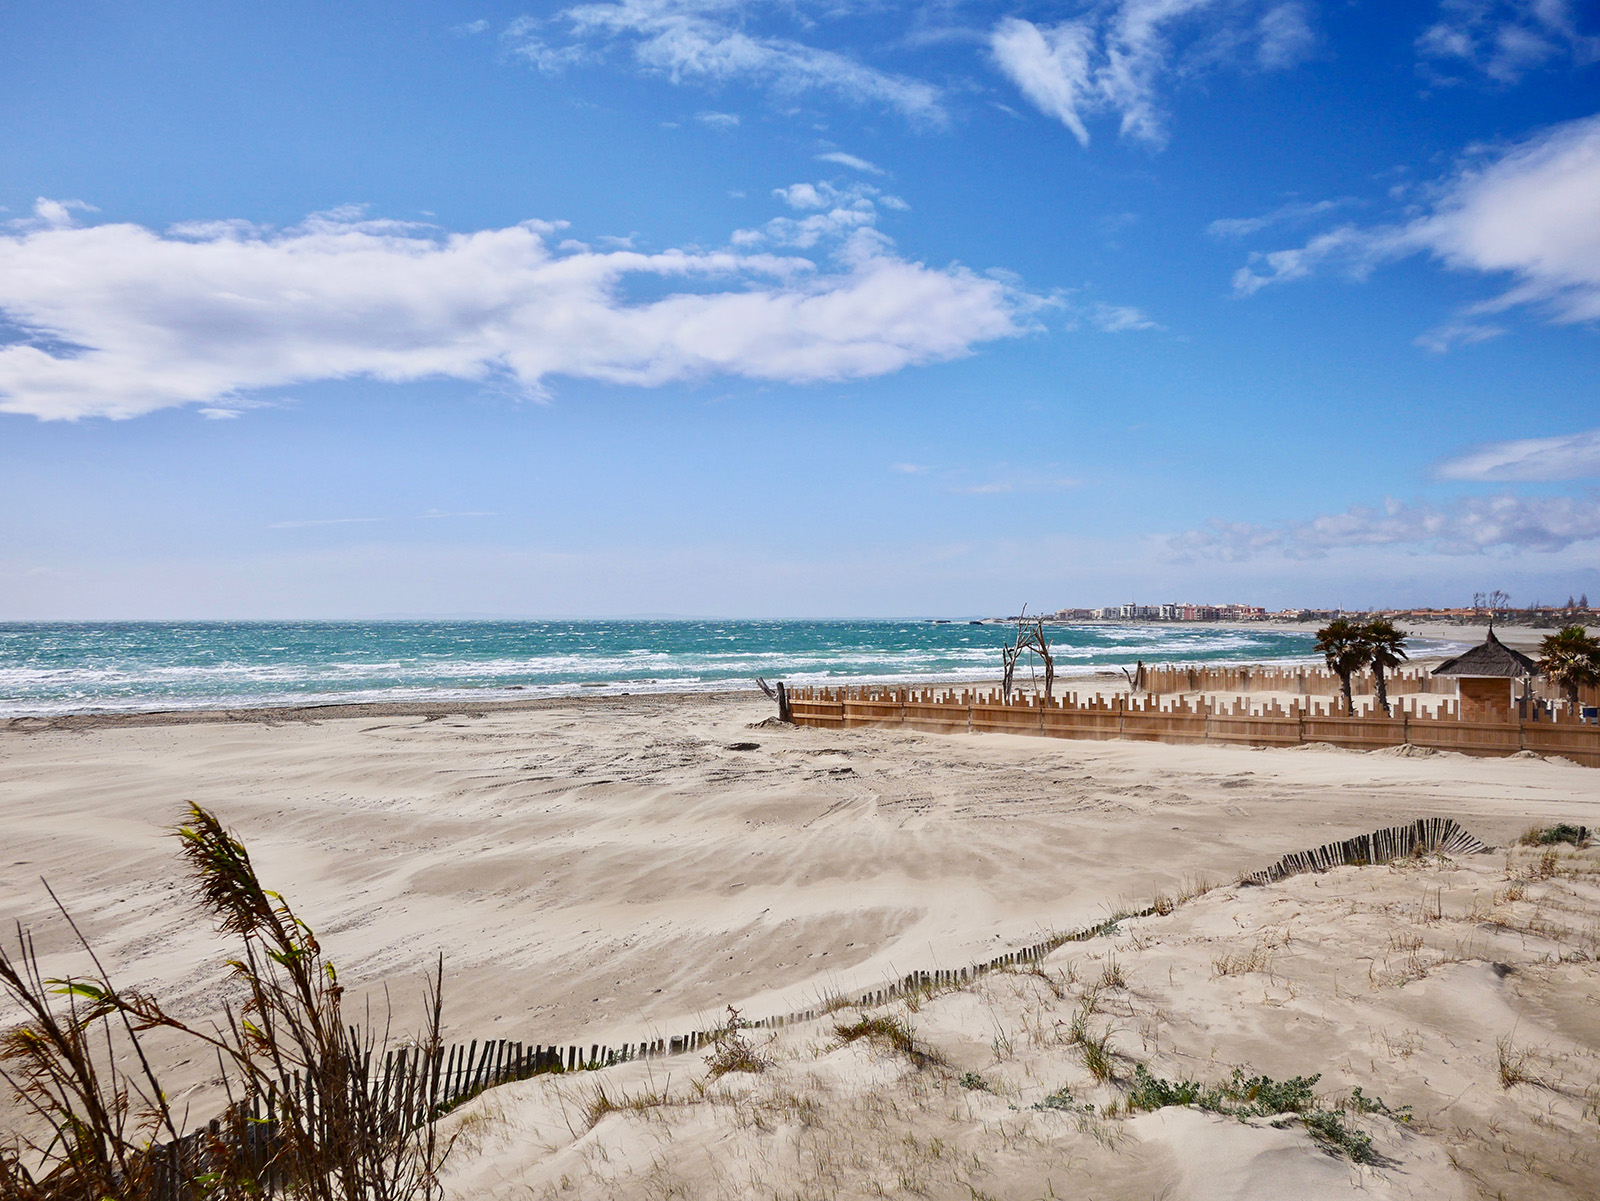 Windiger Strand an einem sonnigen Tag außerhalb von Agde, Südfrankreich.